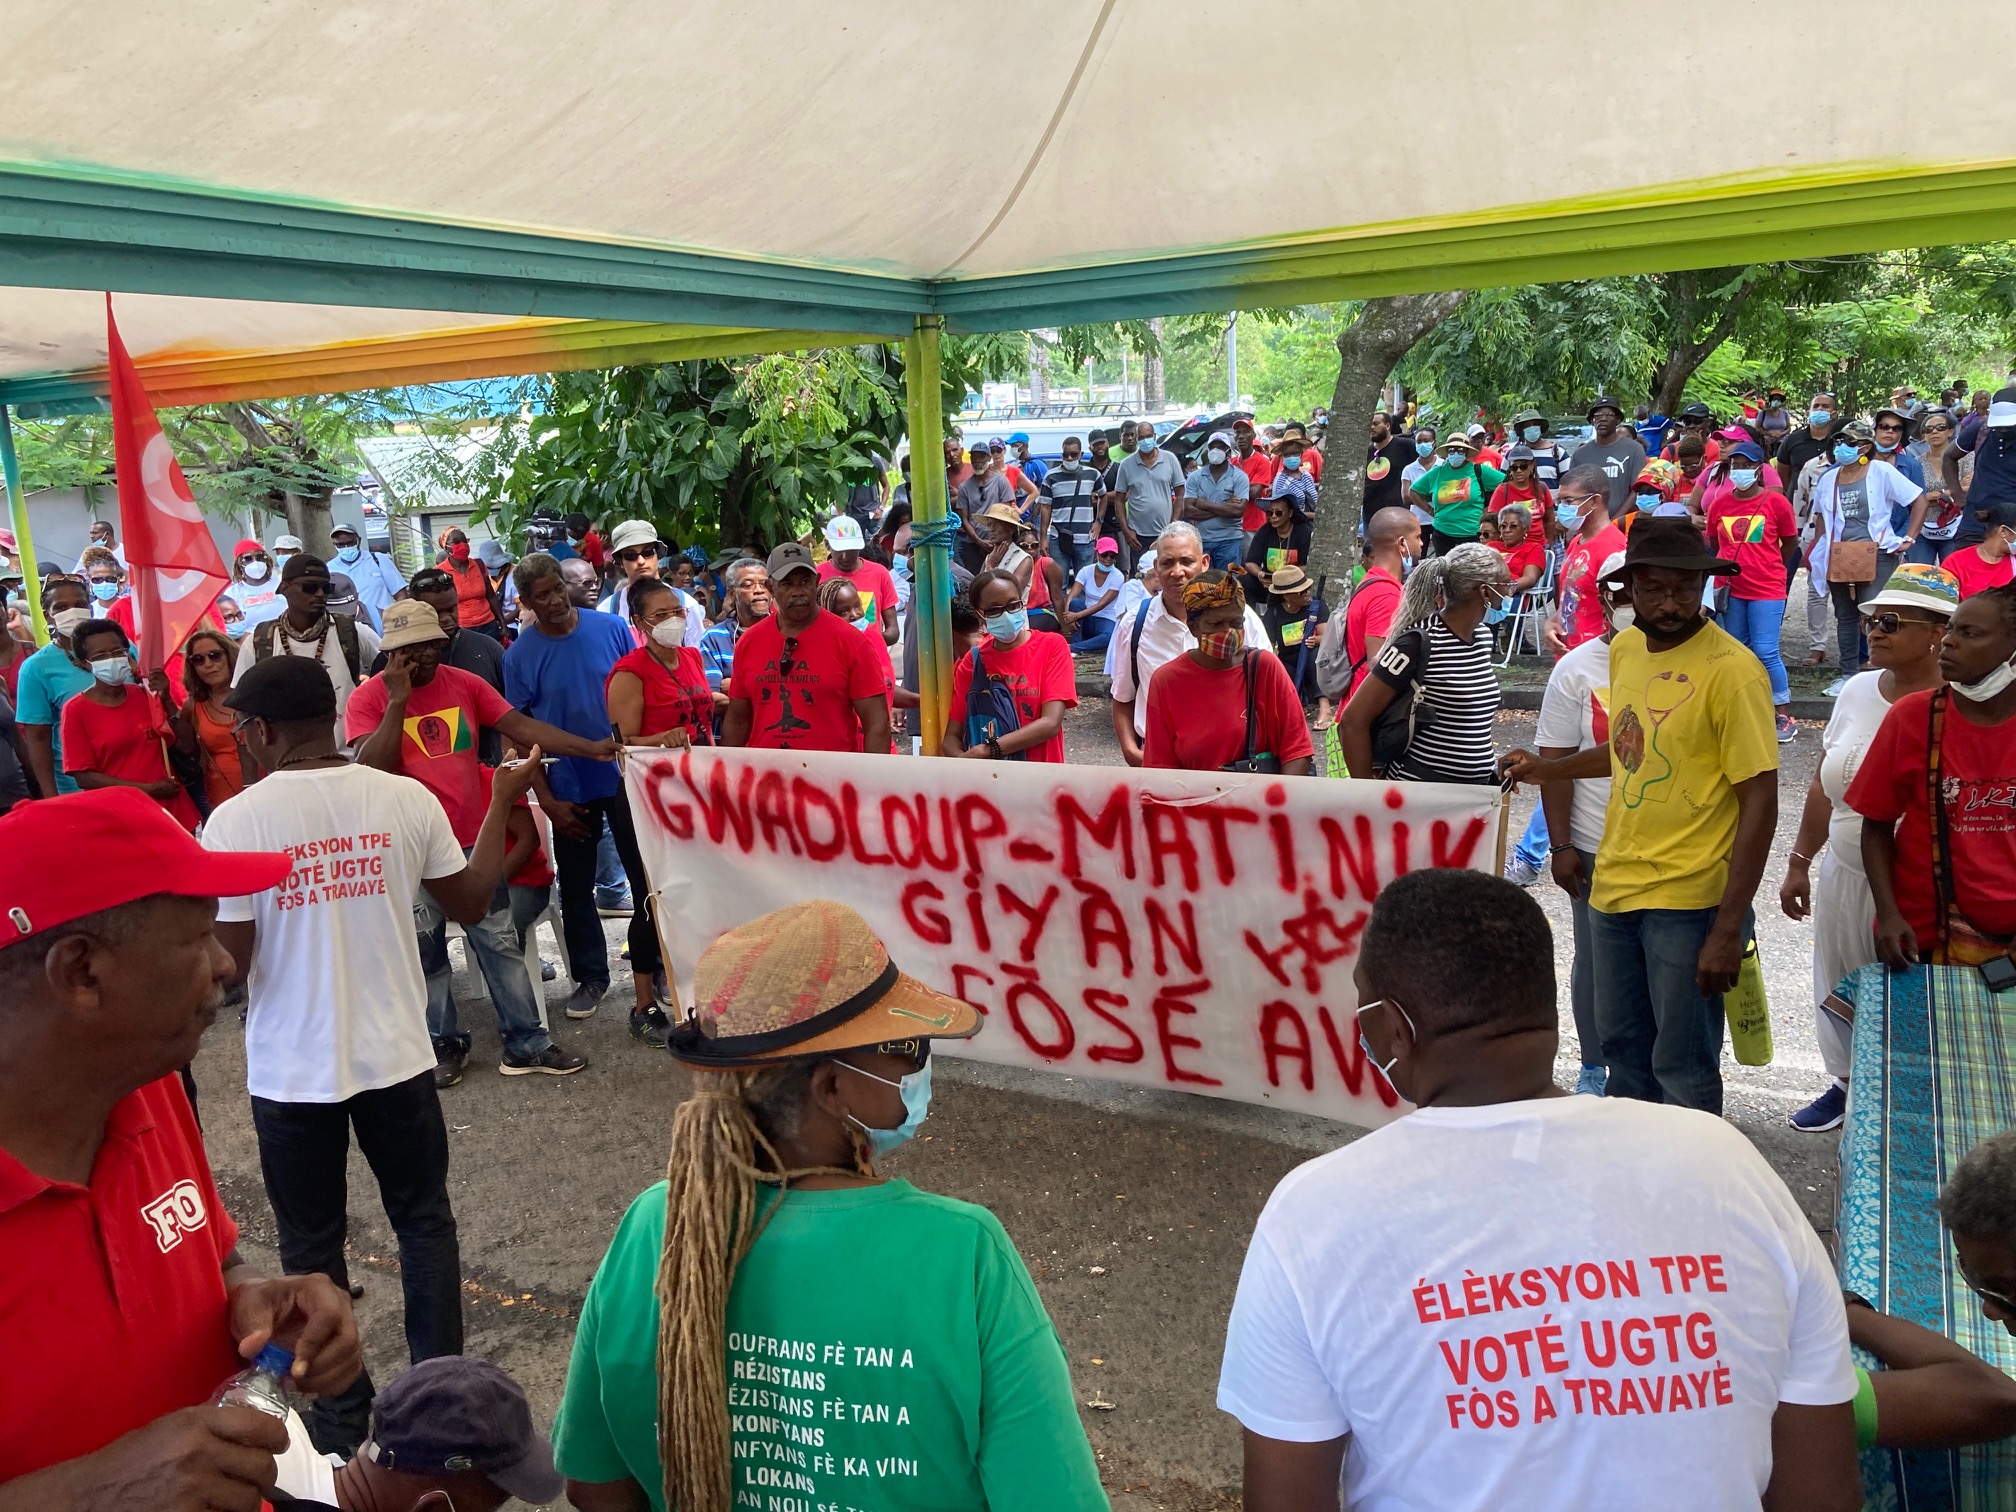     Des centaines de personnes mobilisées en Guadeloupe pour le mouvement Antilles Guyane

